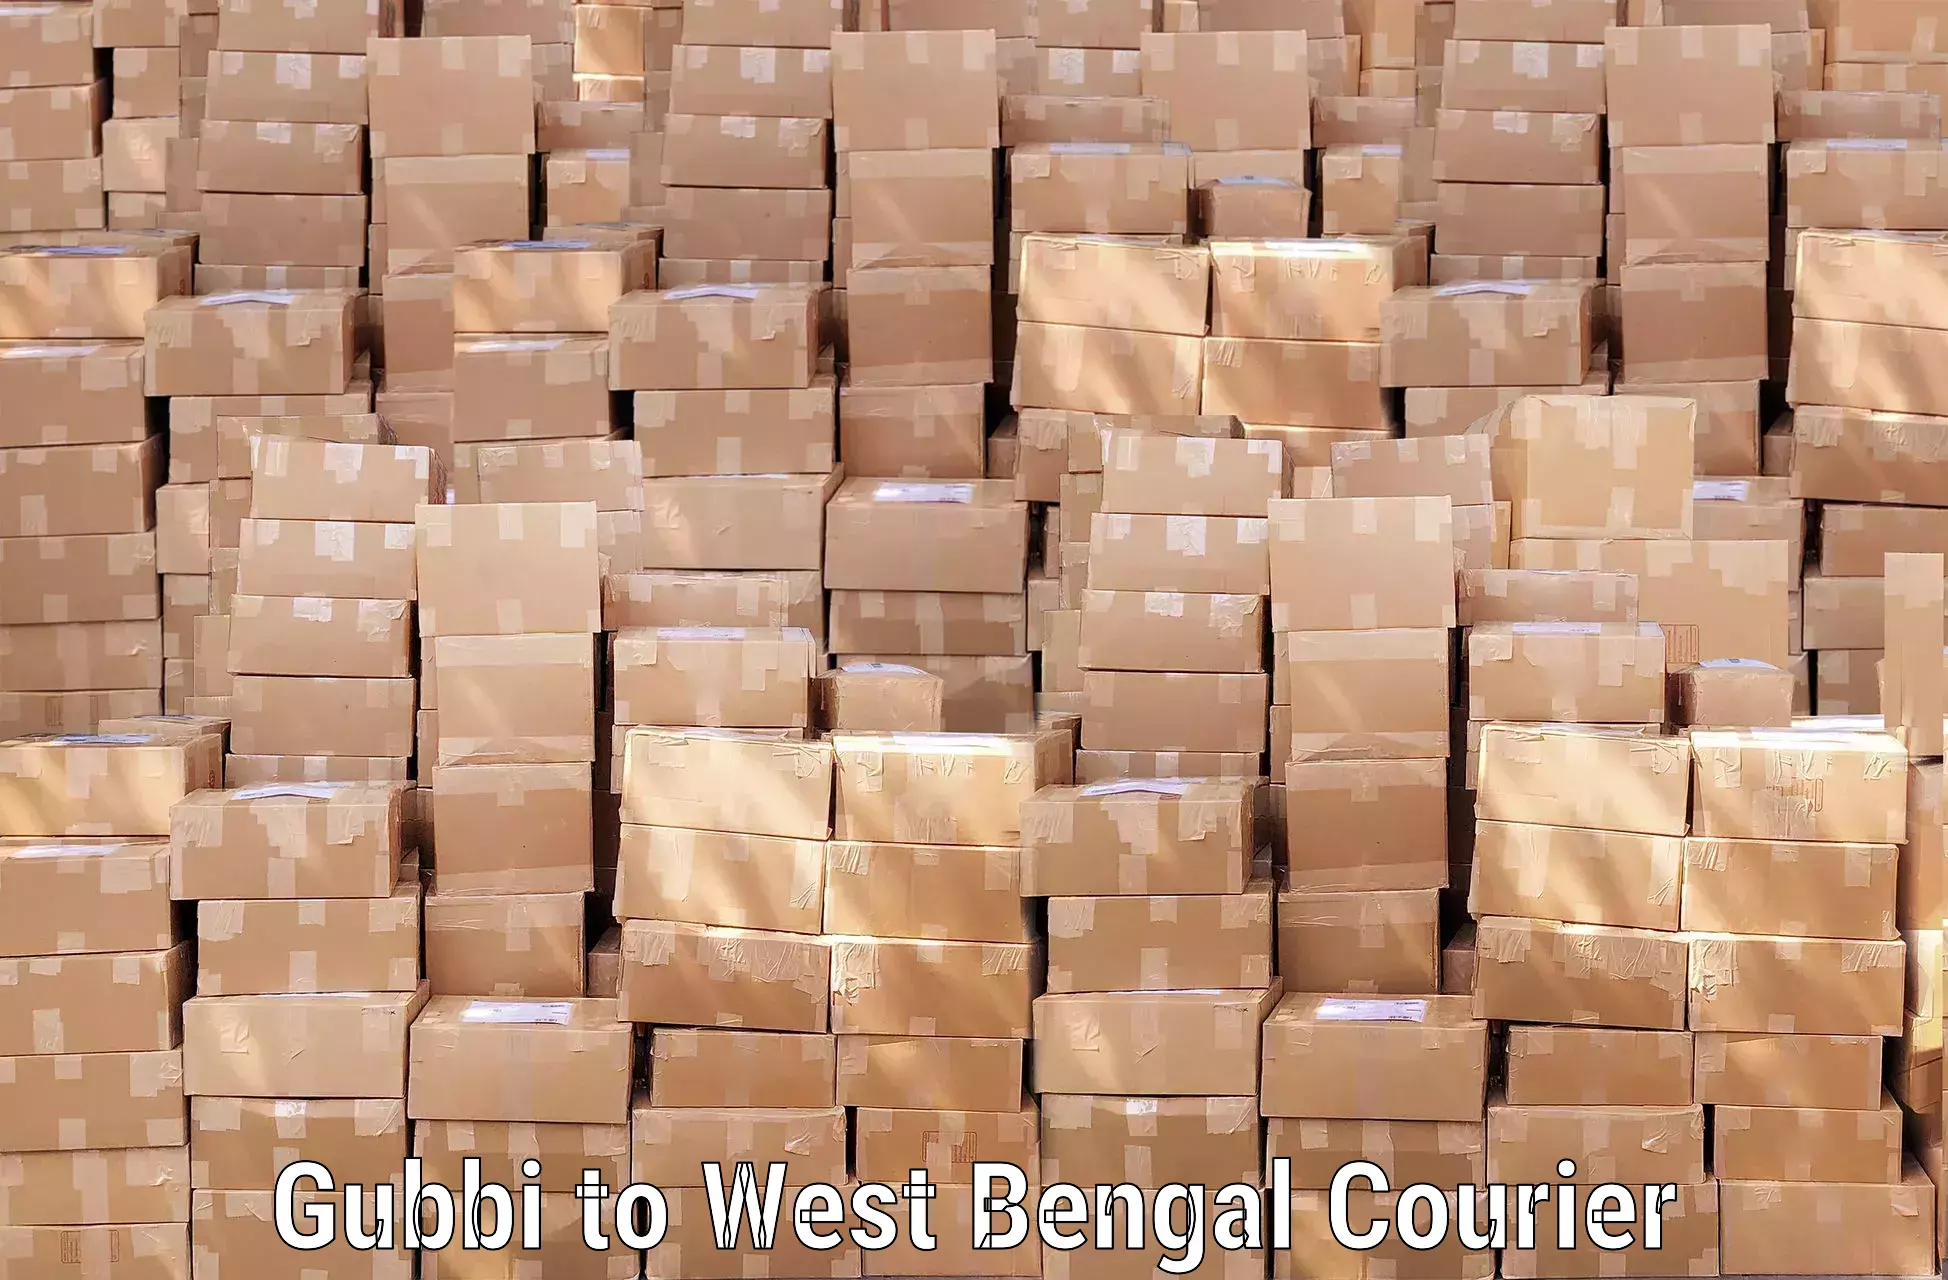 Baggage transport management Gubbi to West Bengal